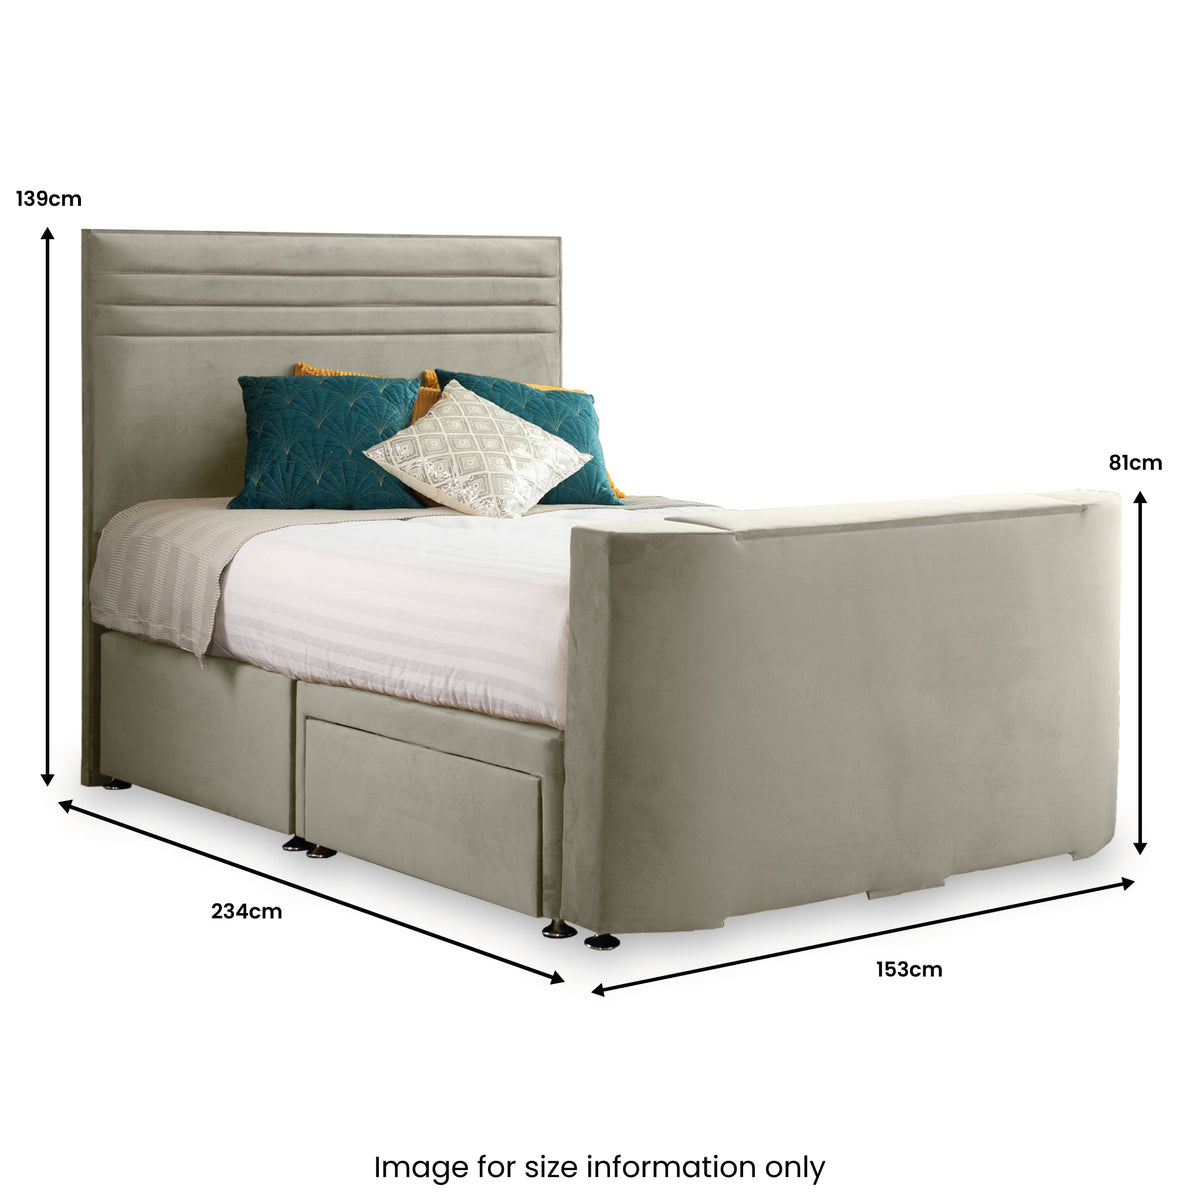 Ryton 2 Drawer Velvet King TV Bed Dimensions by Roseland Furniture 